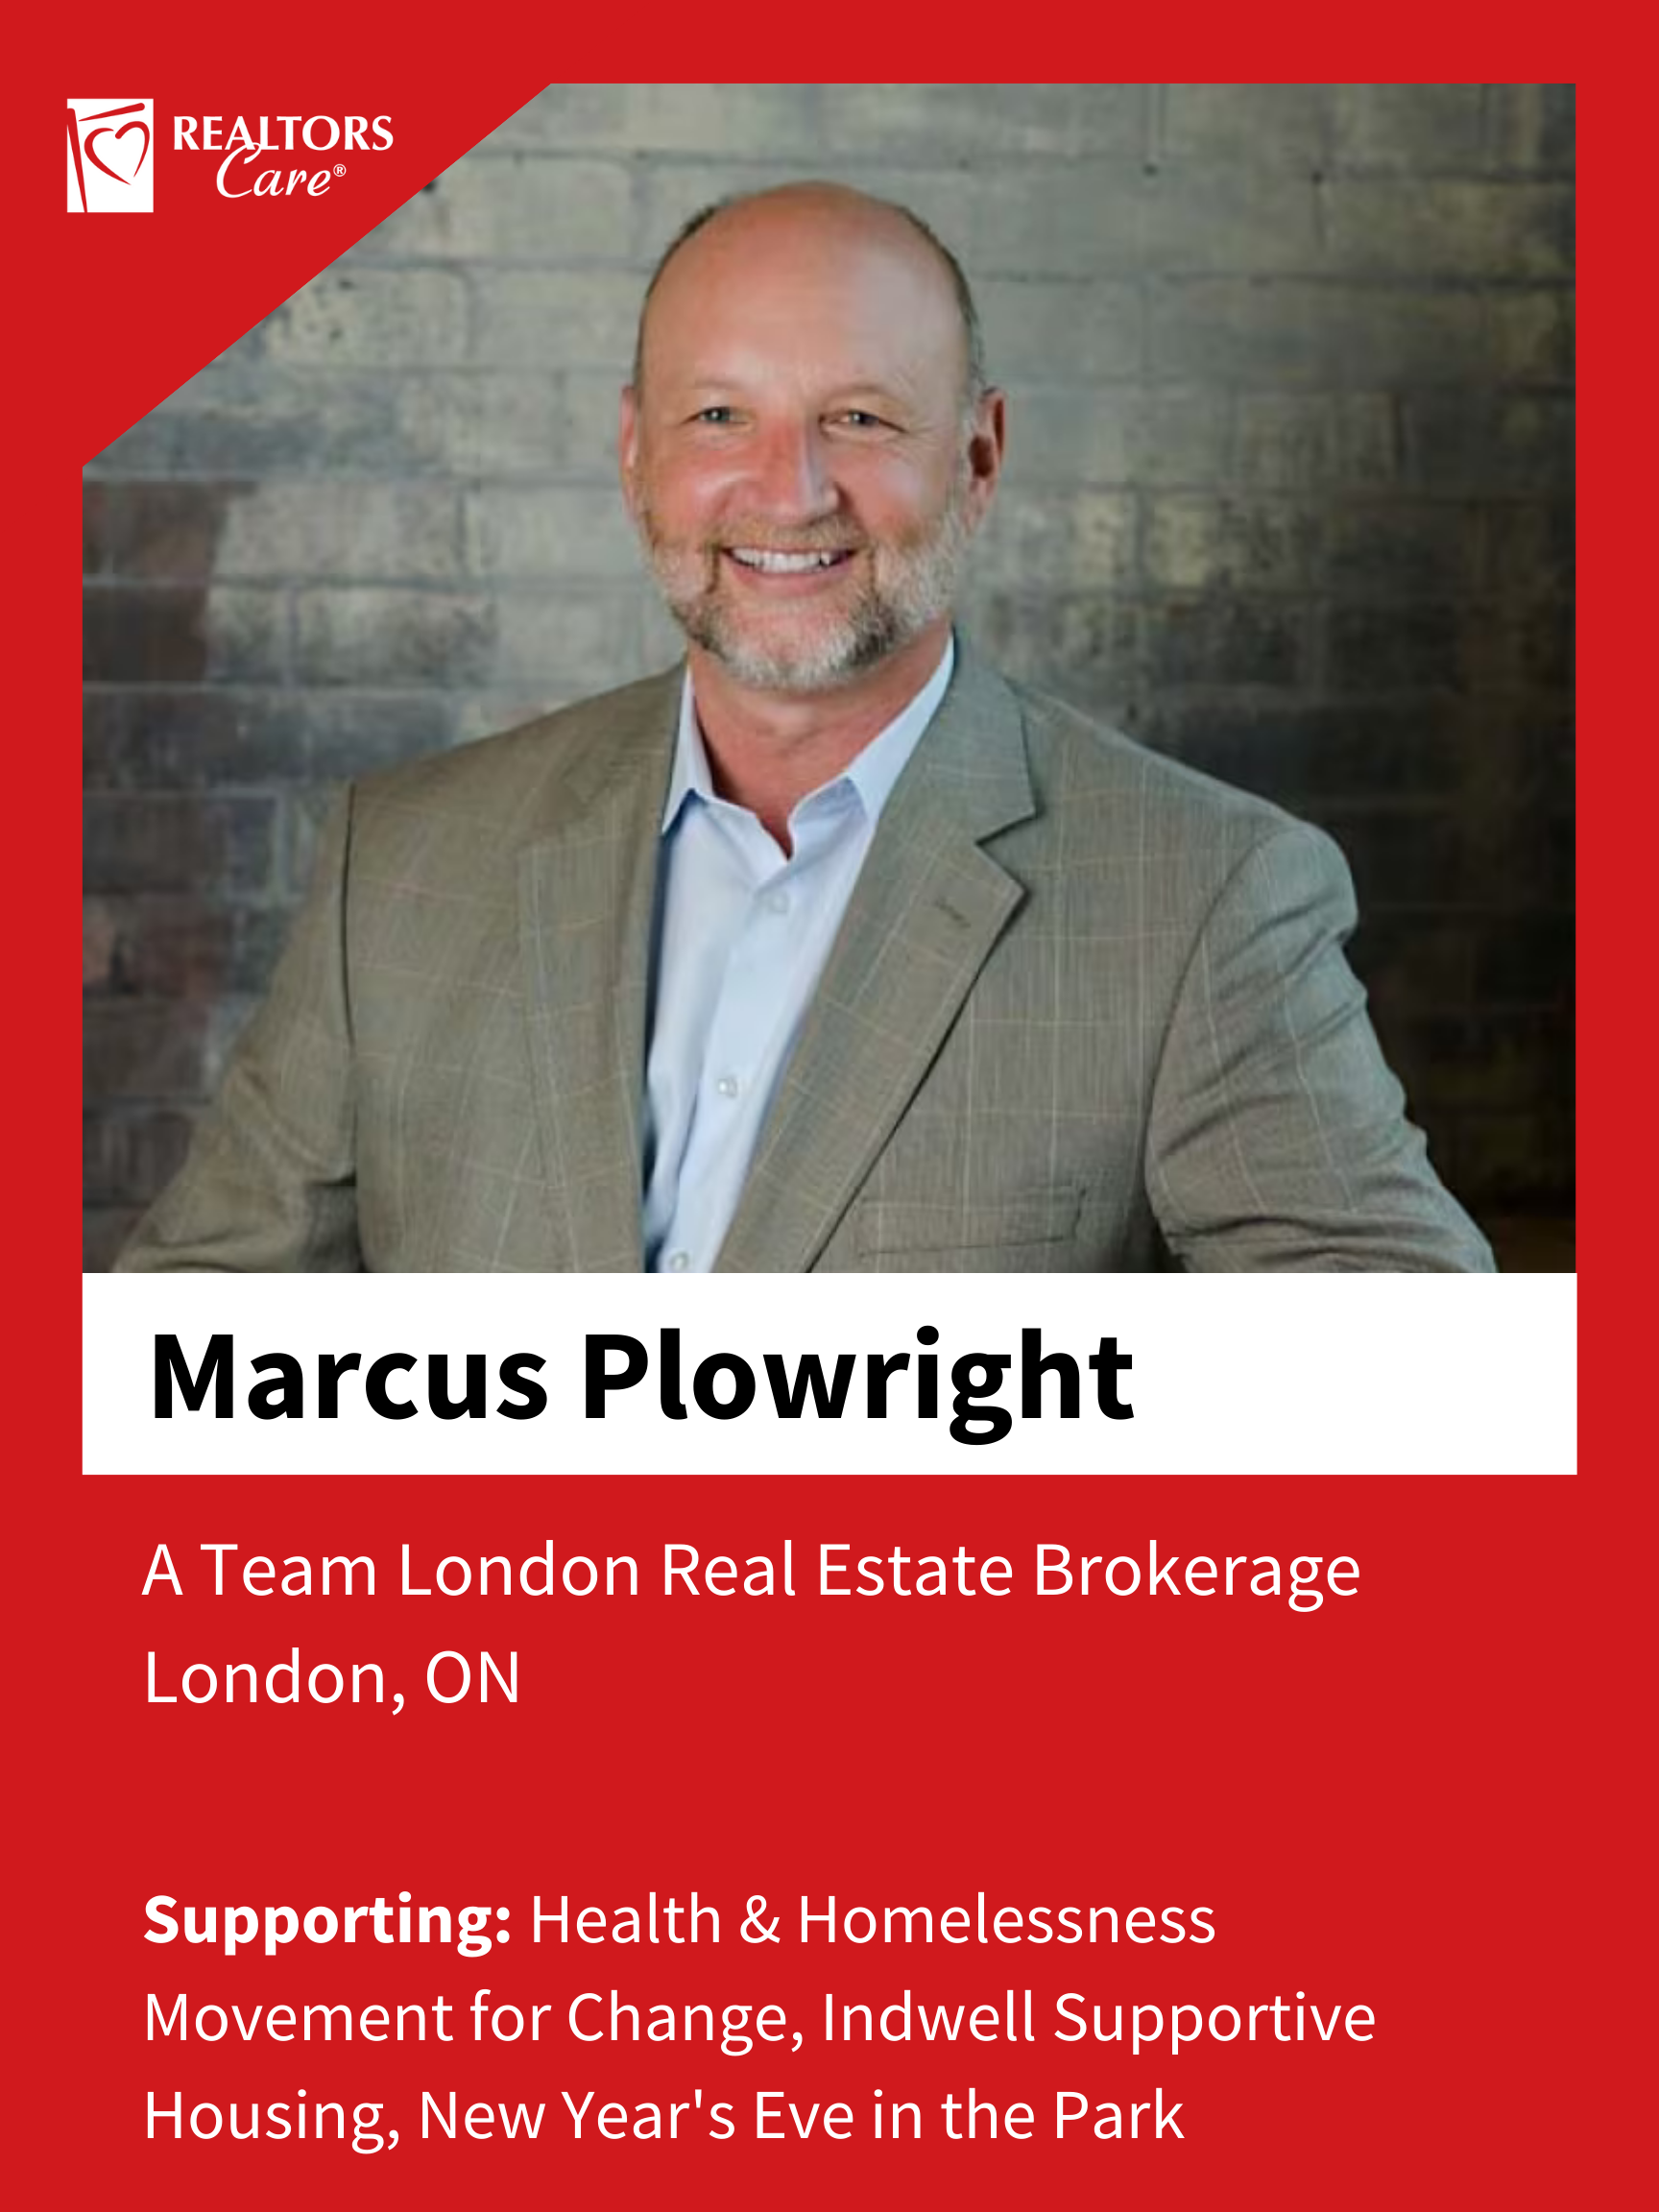 Marcus Plowright
London	ON
